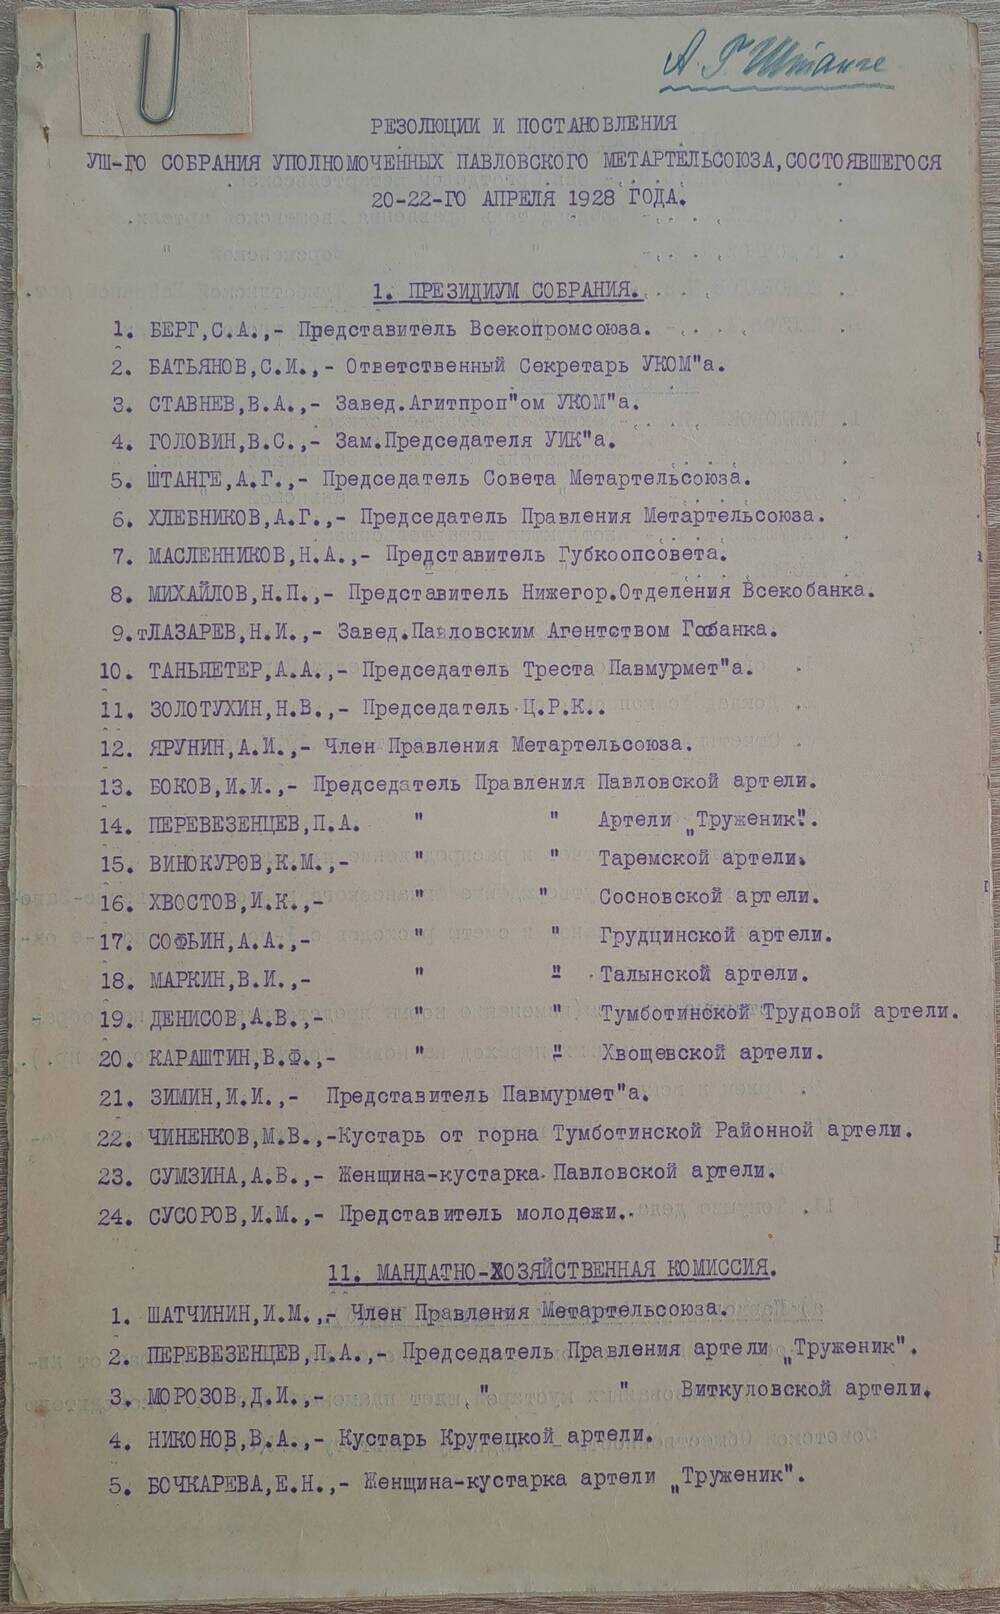 Резолюции и постановления VIII собрания уполномоченных Павловского Метартельсоюза, состоявшегося 20-22 апреля 1928 года.